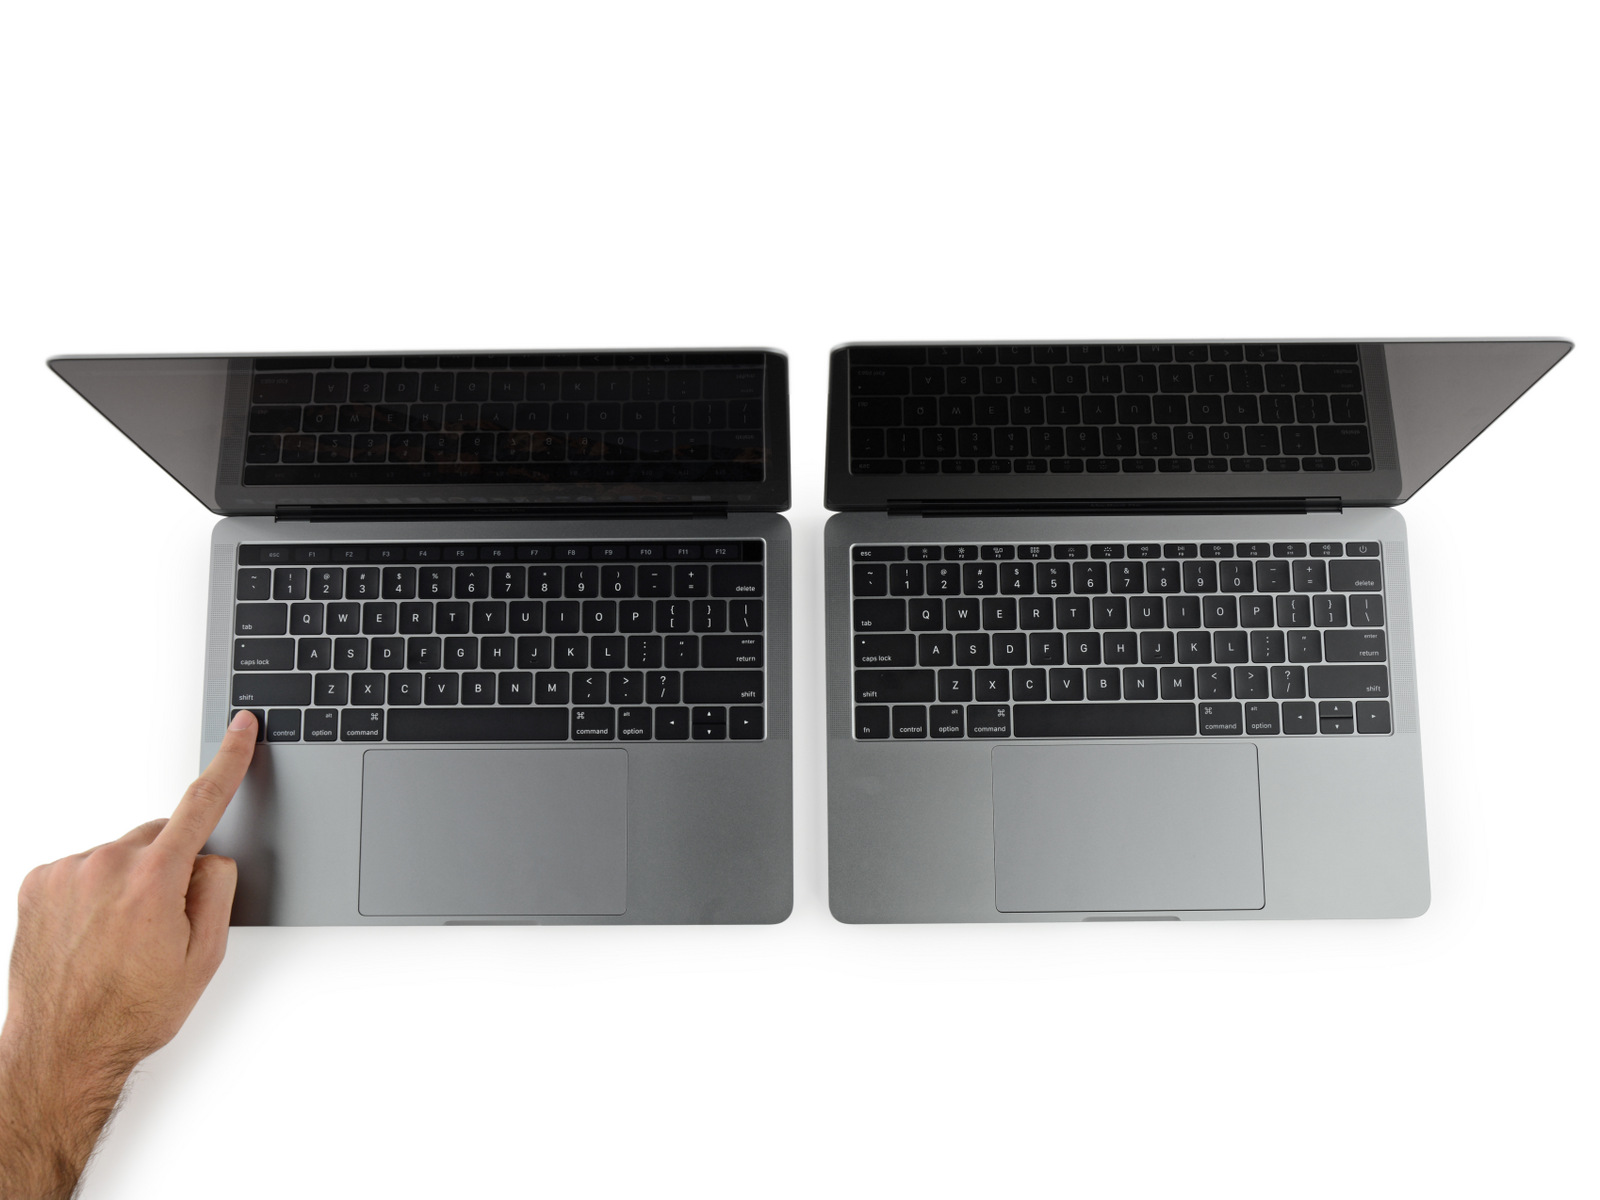 Le trackpad sur les nouveaux MacBook Pro pose problème